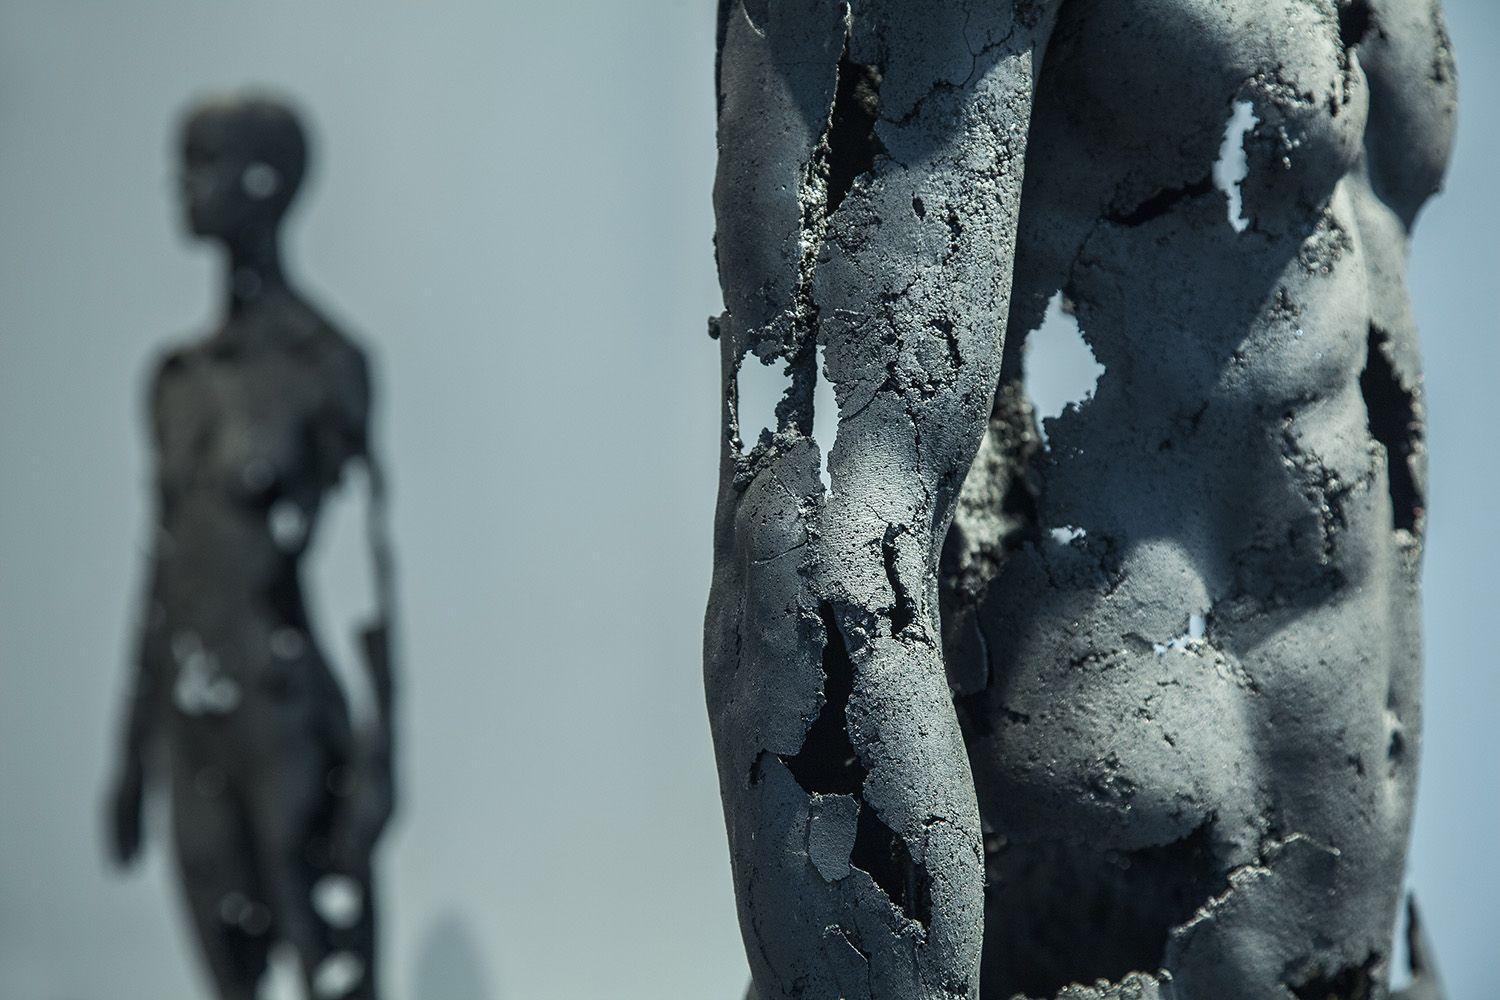 La presencia de la ausencia - Masculino (III) de Tom Price - Escultura de carbón, cuerpo desnudo en venta 4